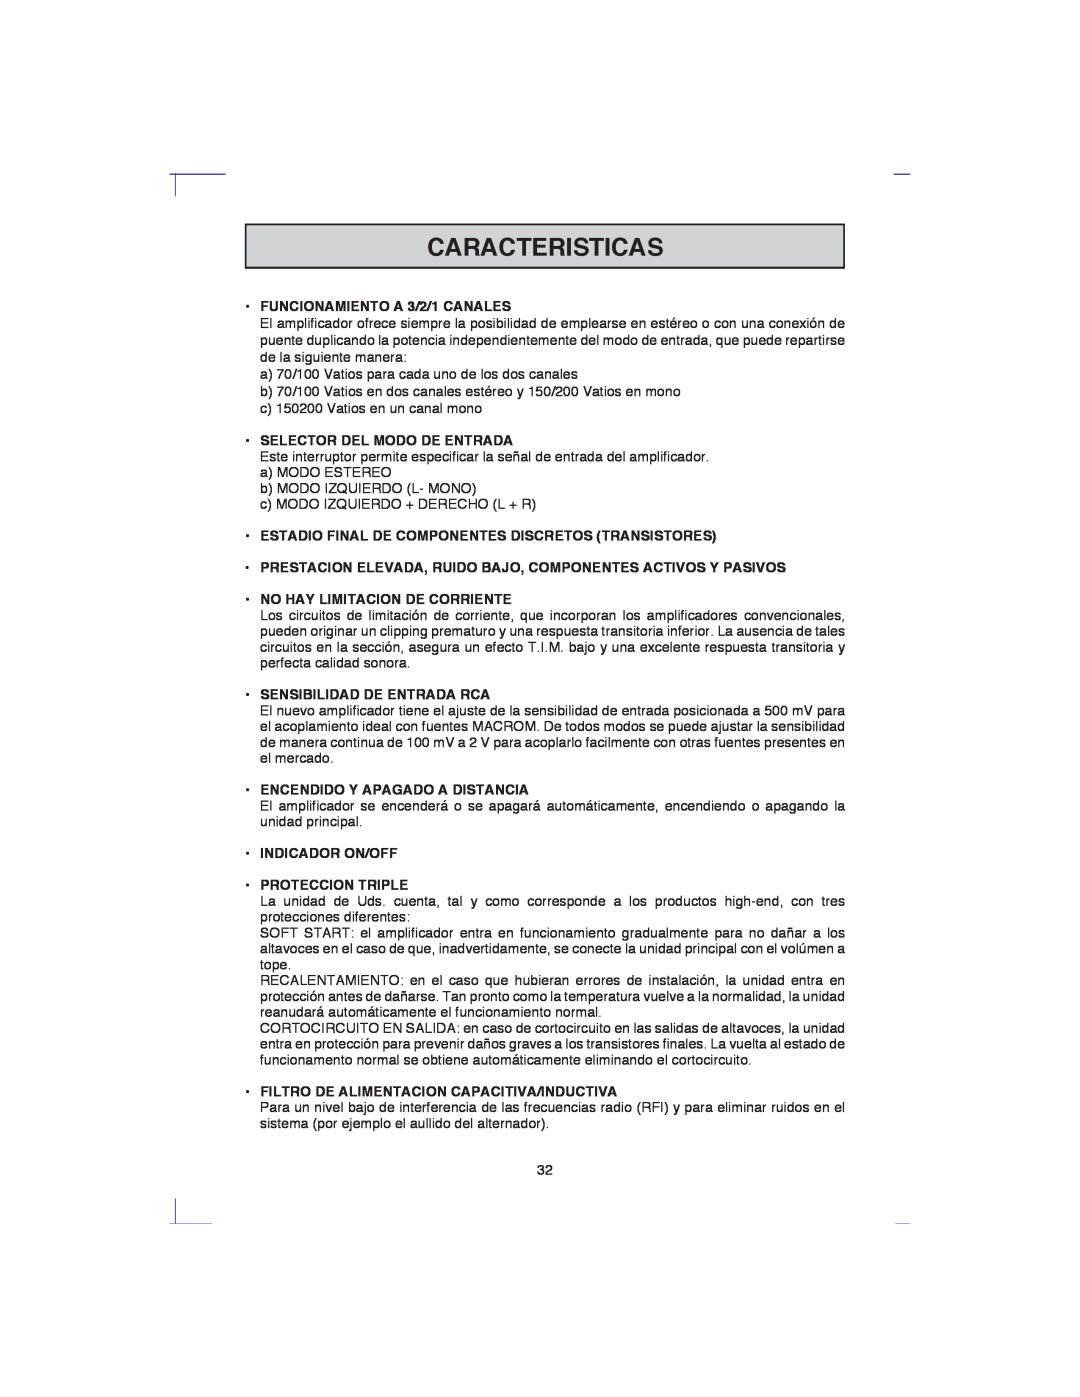 Macrom 42.17 Caracteristicas, FUNCIONAMIENTO A 3/2/1 CANALES, Selector Del Modo De Entrada, No Hay Limitacion De Corriente 